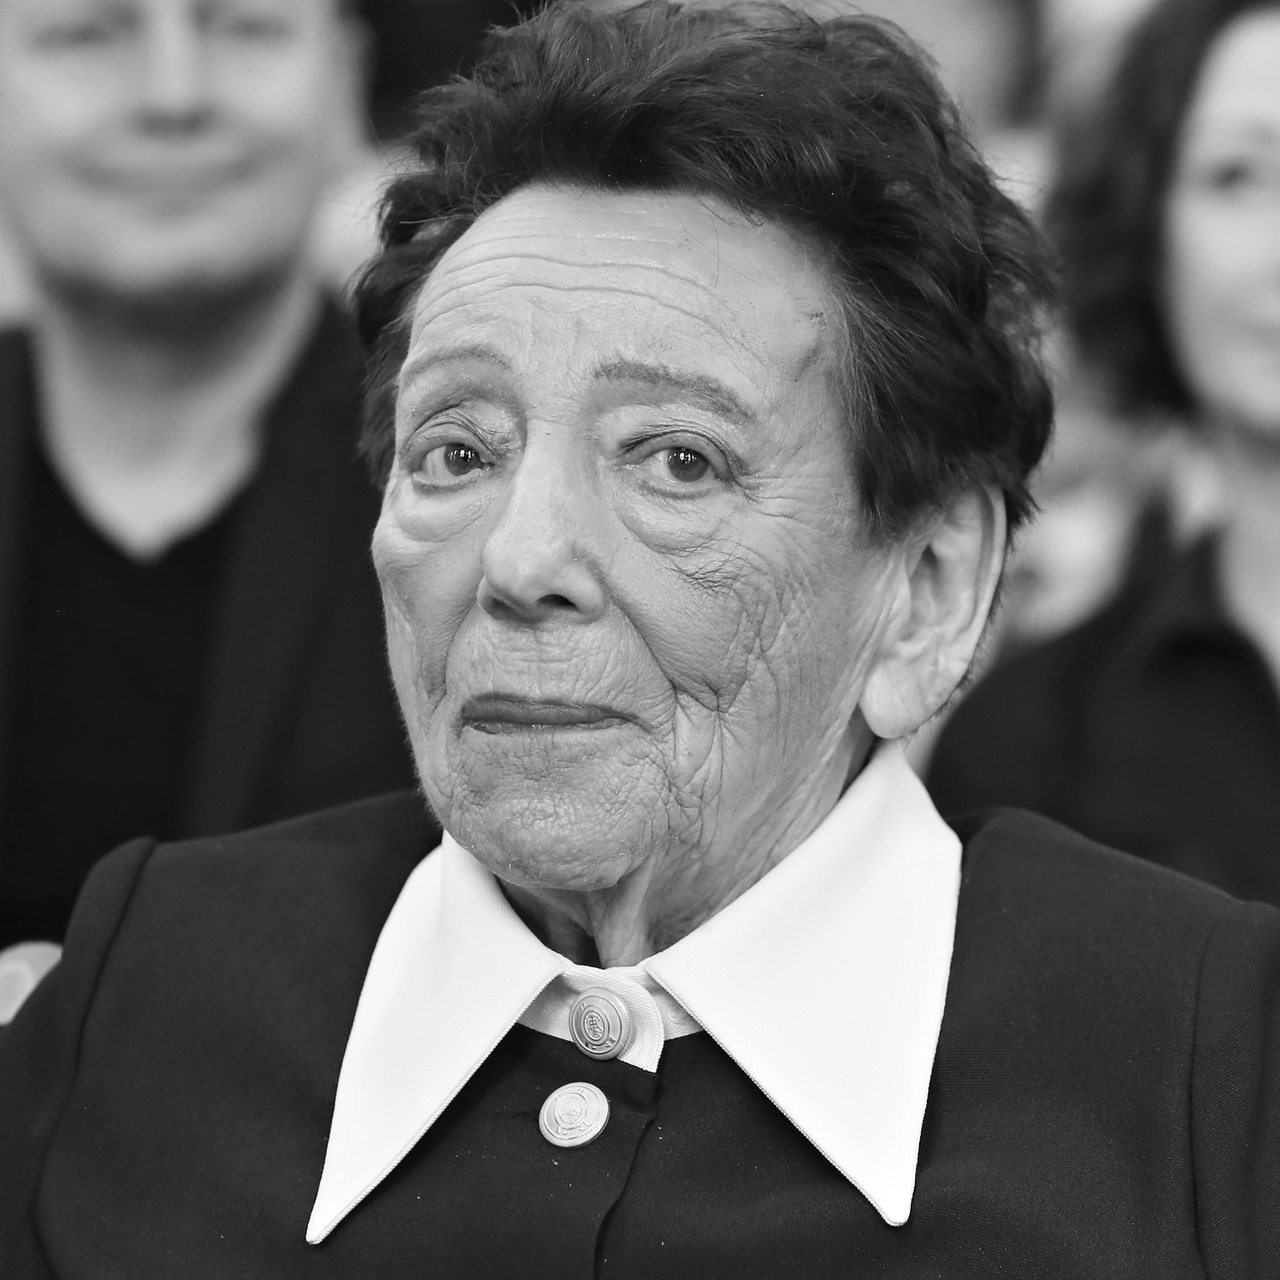 Schwarz-Weiß Aufnahme der kürzlich verstorbenen Holocaust Überlebenden Inge Deutschkron von 2018 bei der Verleihung der Ehrenbürgerwürde von Berlin